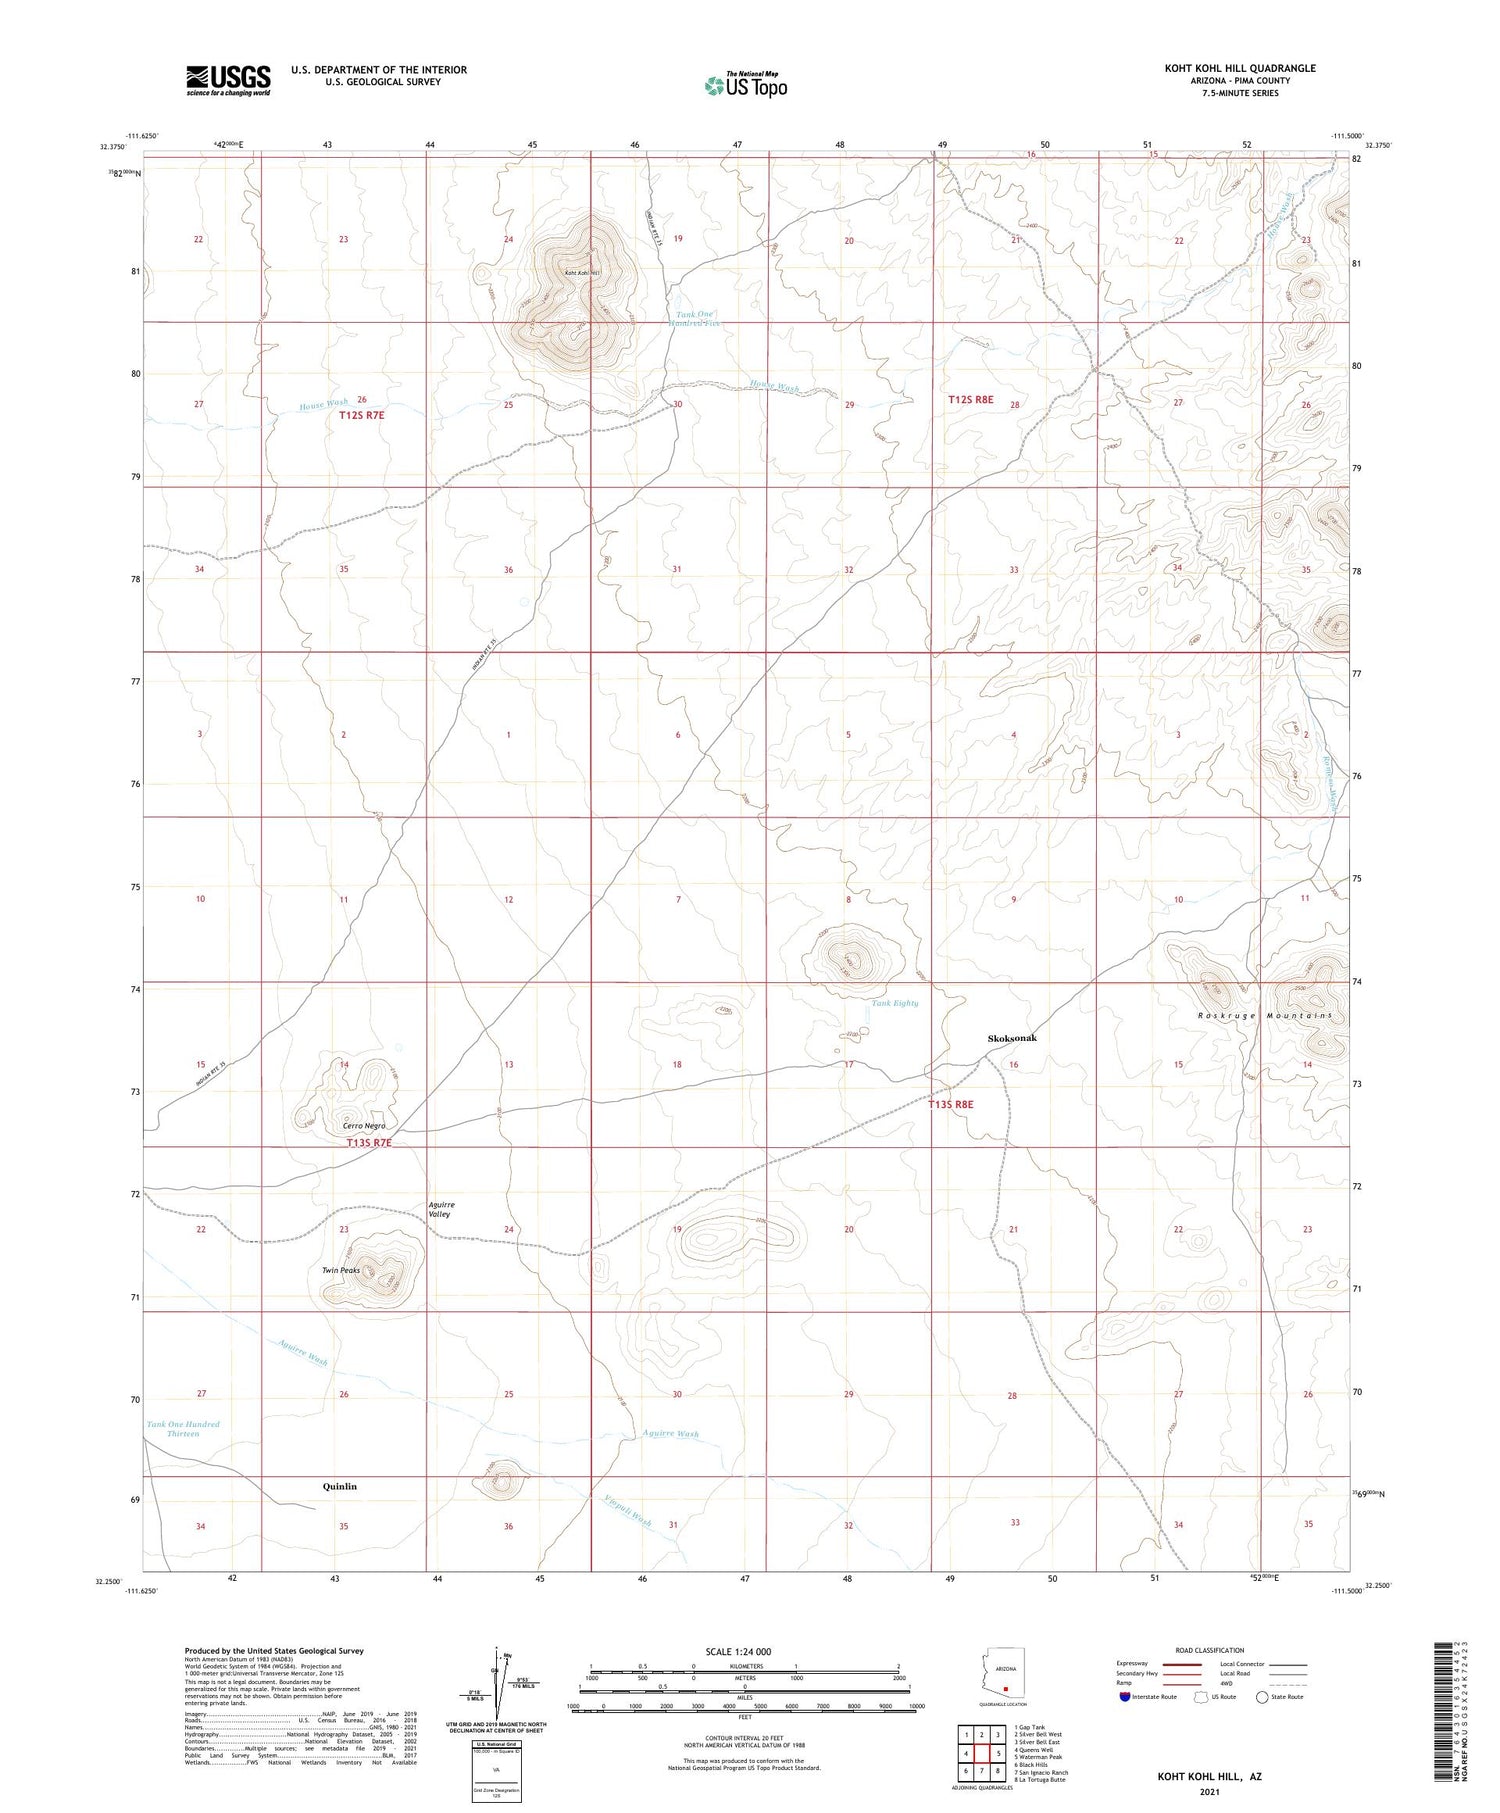 Koht Kohl Hill Arizona US Topo Map Image